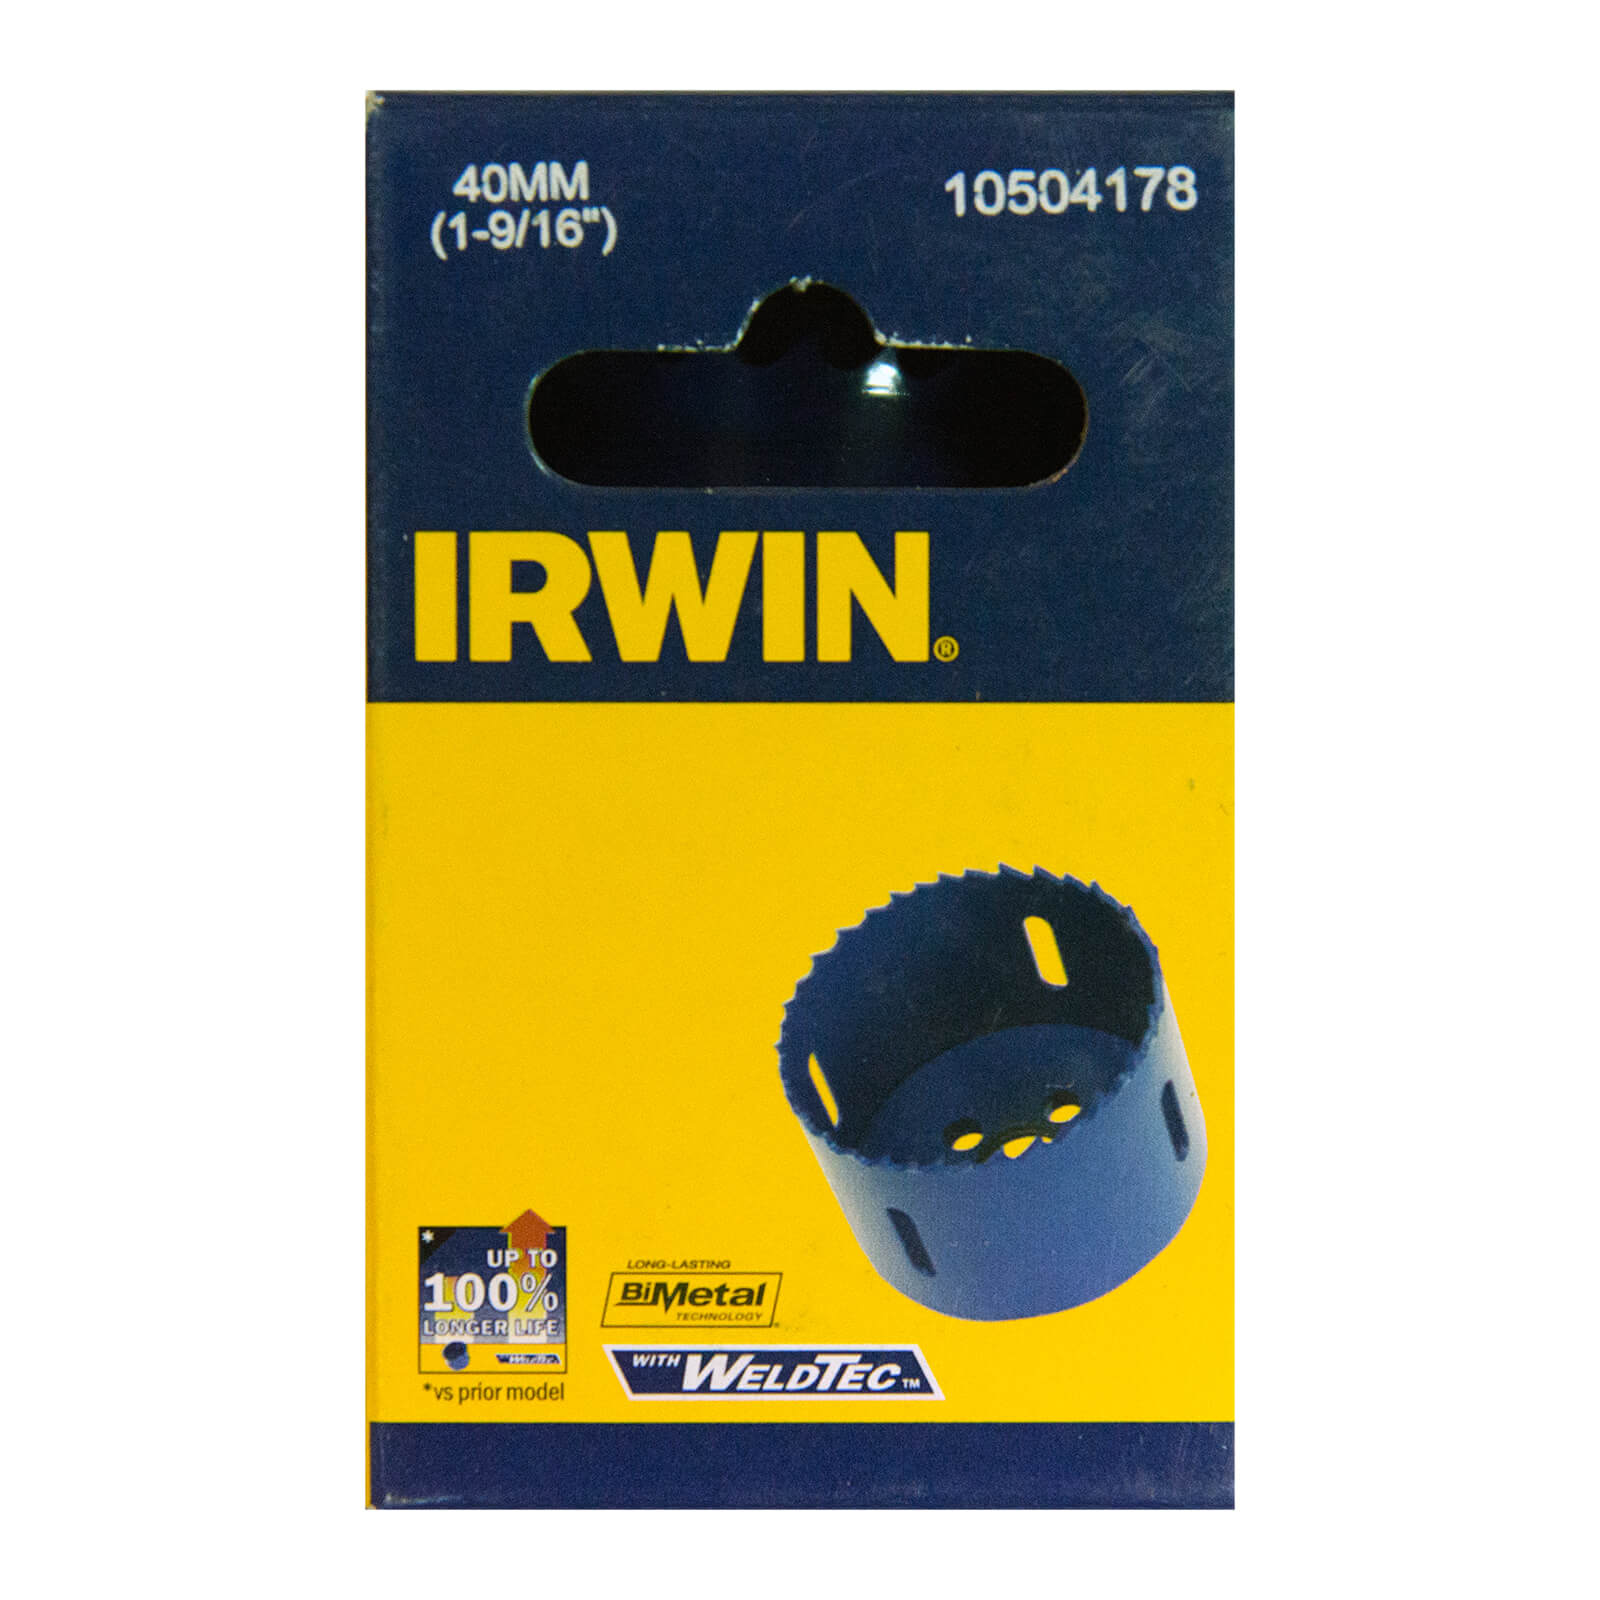 IRWIN Bi-Metal Hole Saw - 40mm